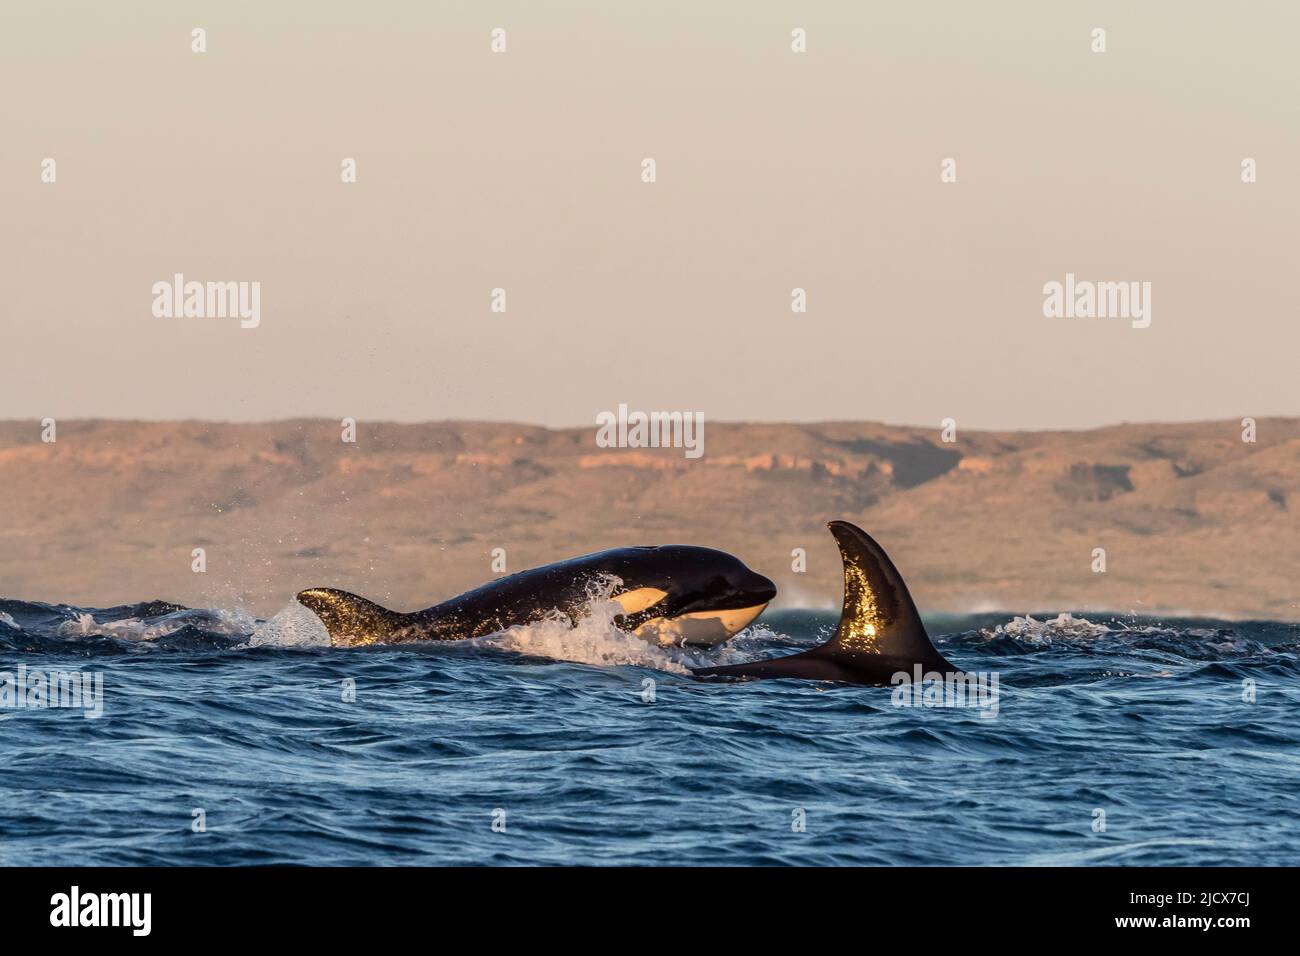 Un groupe de mammifères mangeant des épaulards (Orcinus orca), en surfaçage sur le récif de Ningaloo, Australie occidentale, Australie, Pacifique Banque D'Images